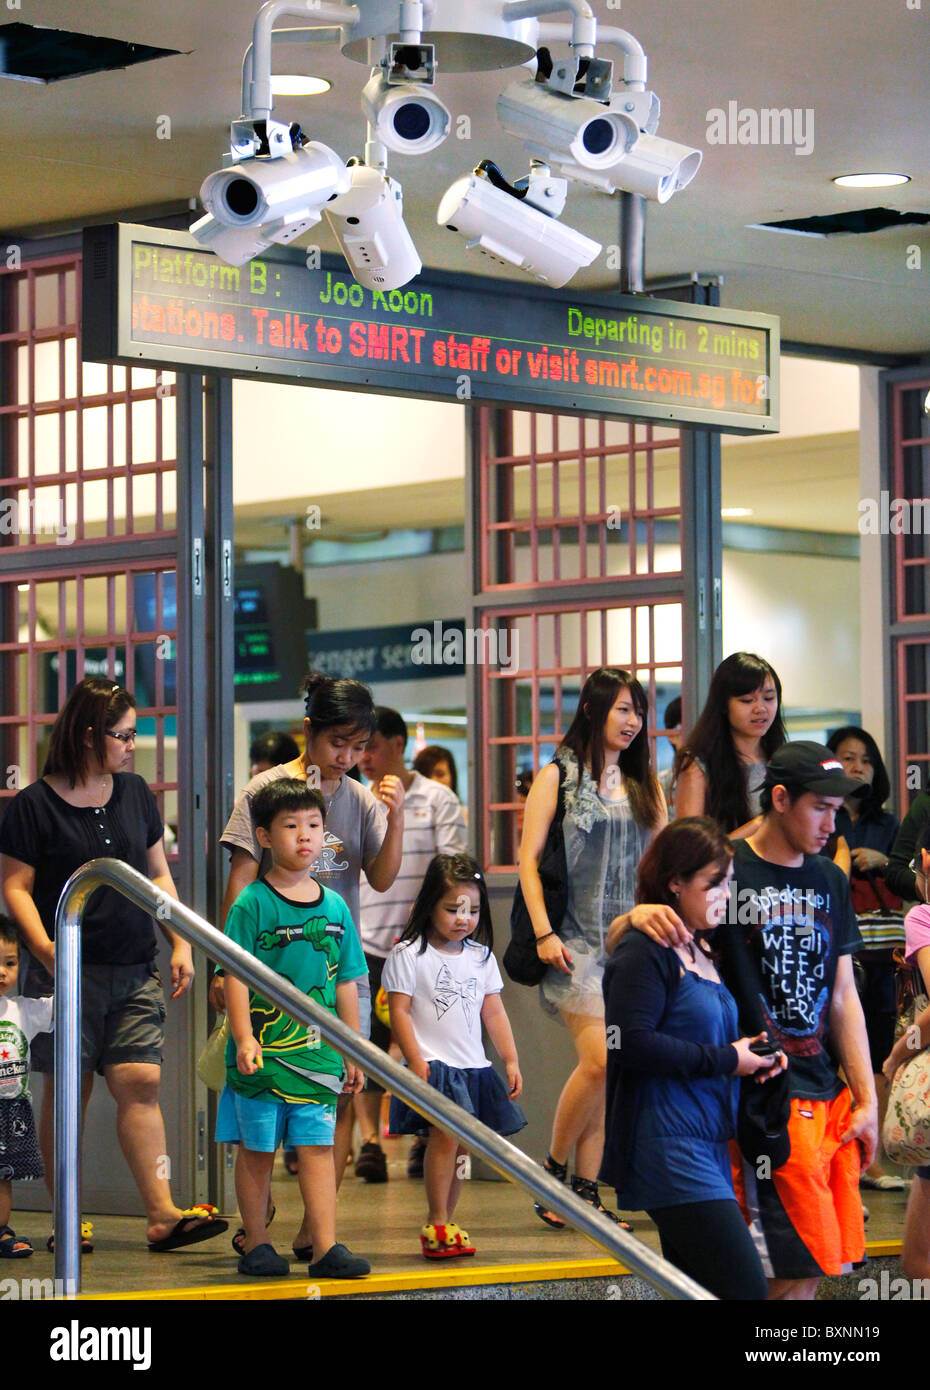 Singapur, salida de MRT (Mass Rapid Transit) estación de metro en cámara de video vigilancia Foto de stock